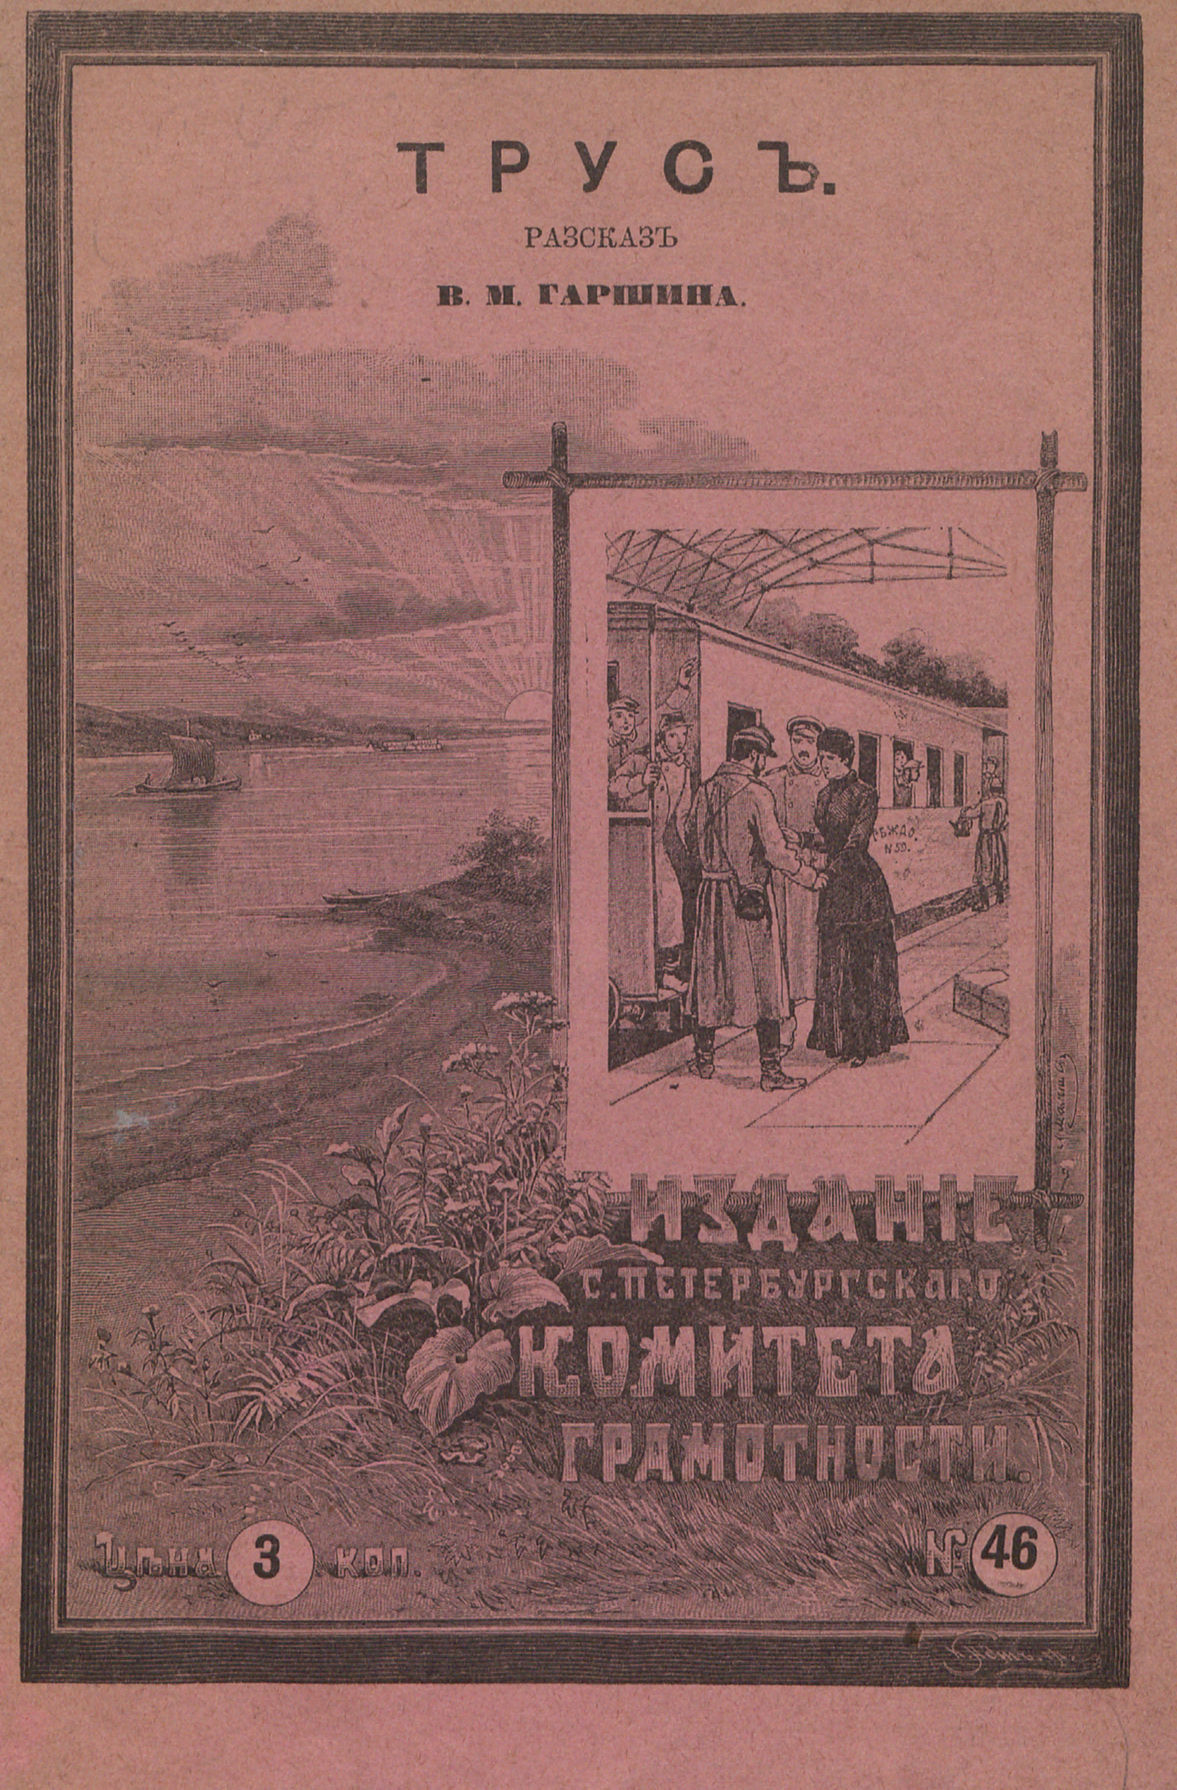 Гаршин Всеволод Михайлович - Трус - 1894